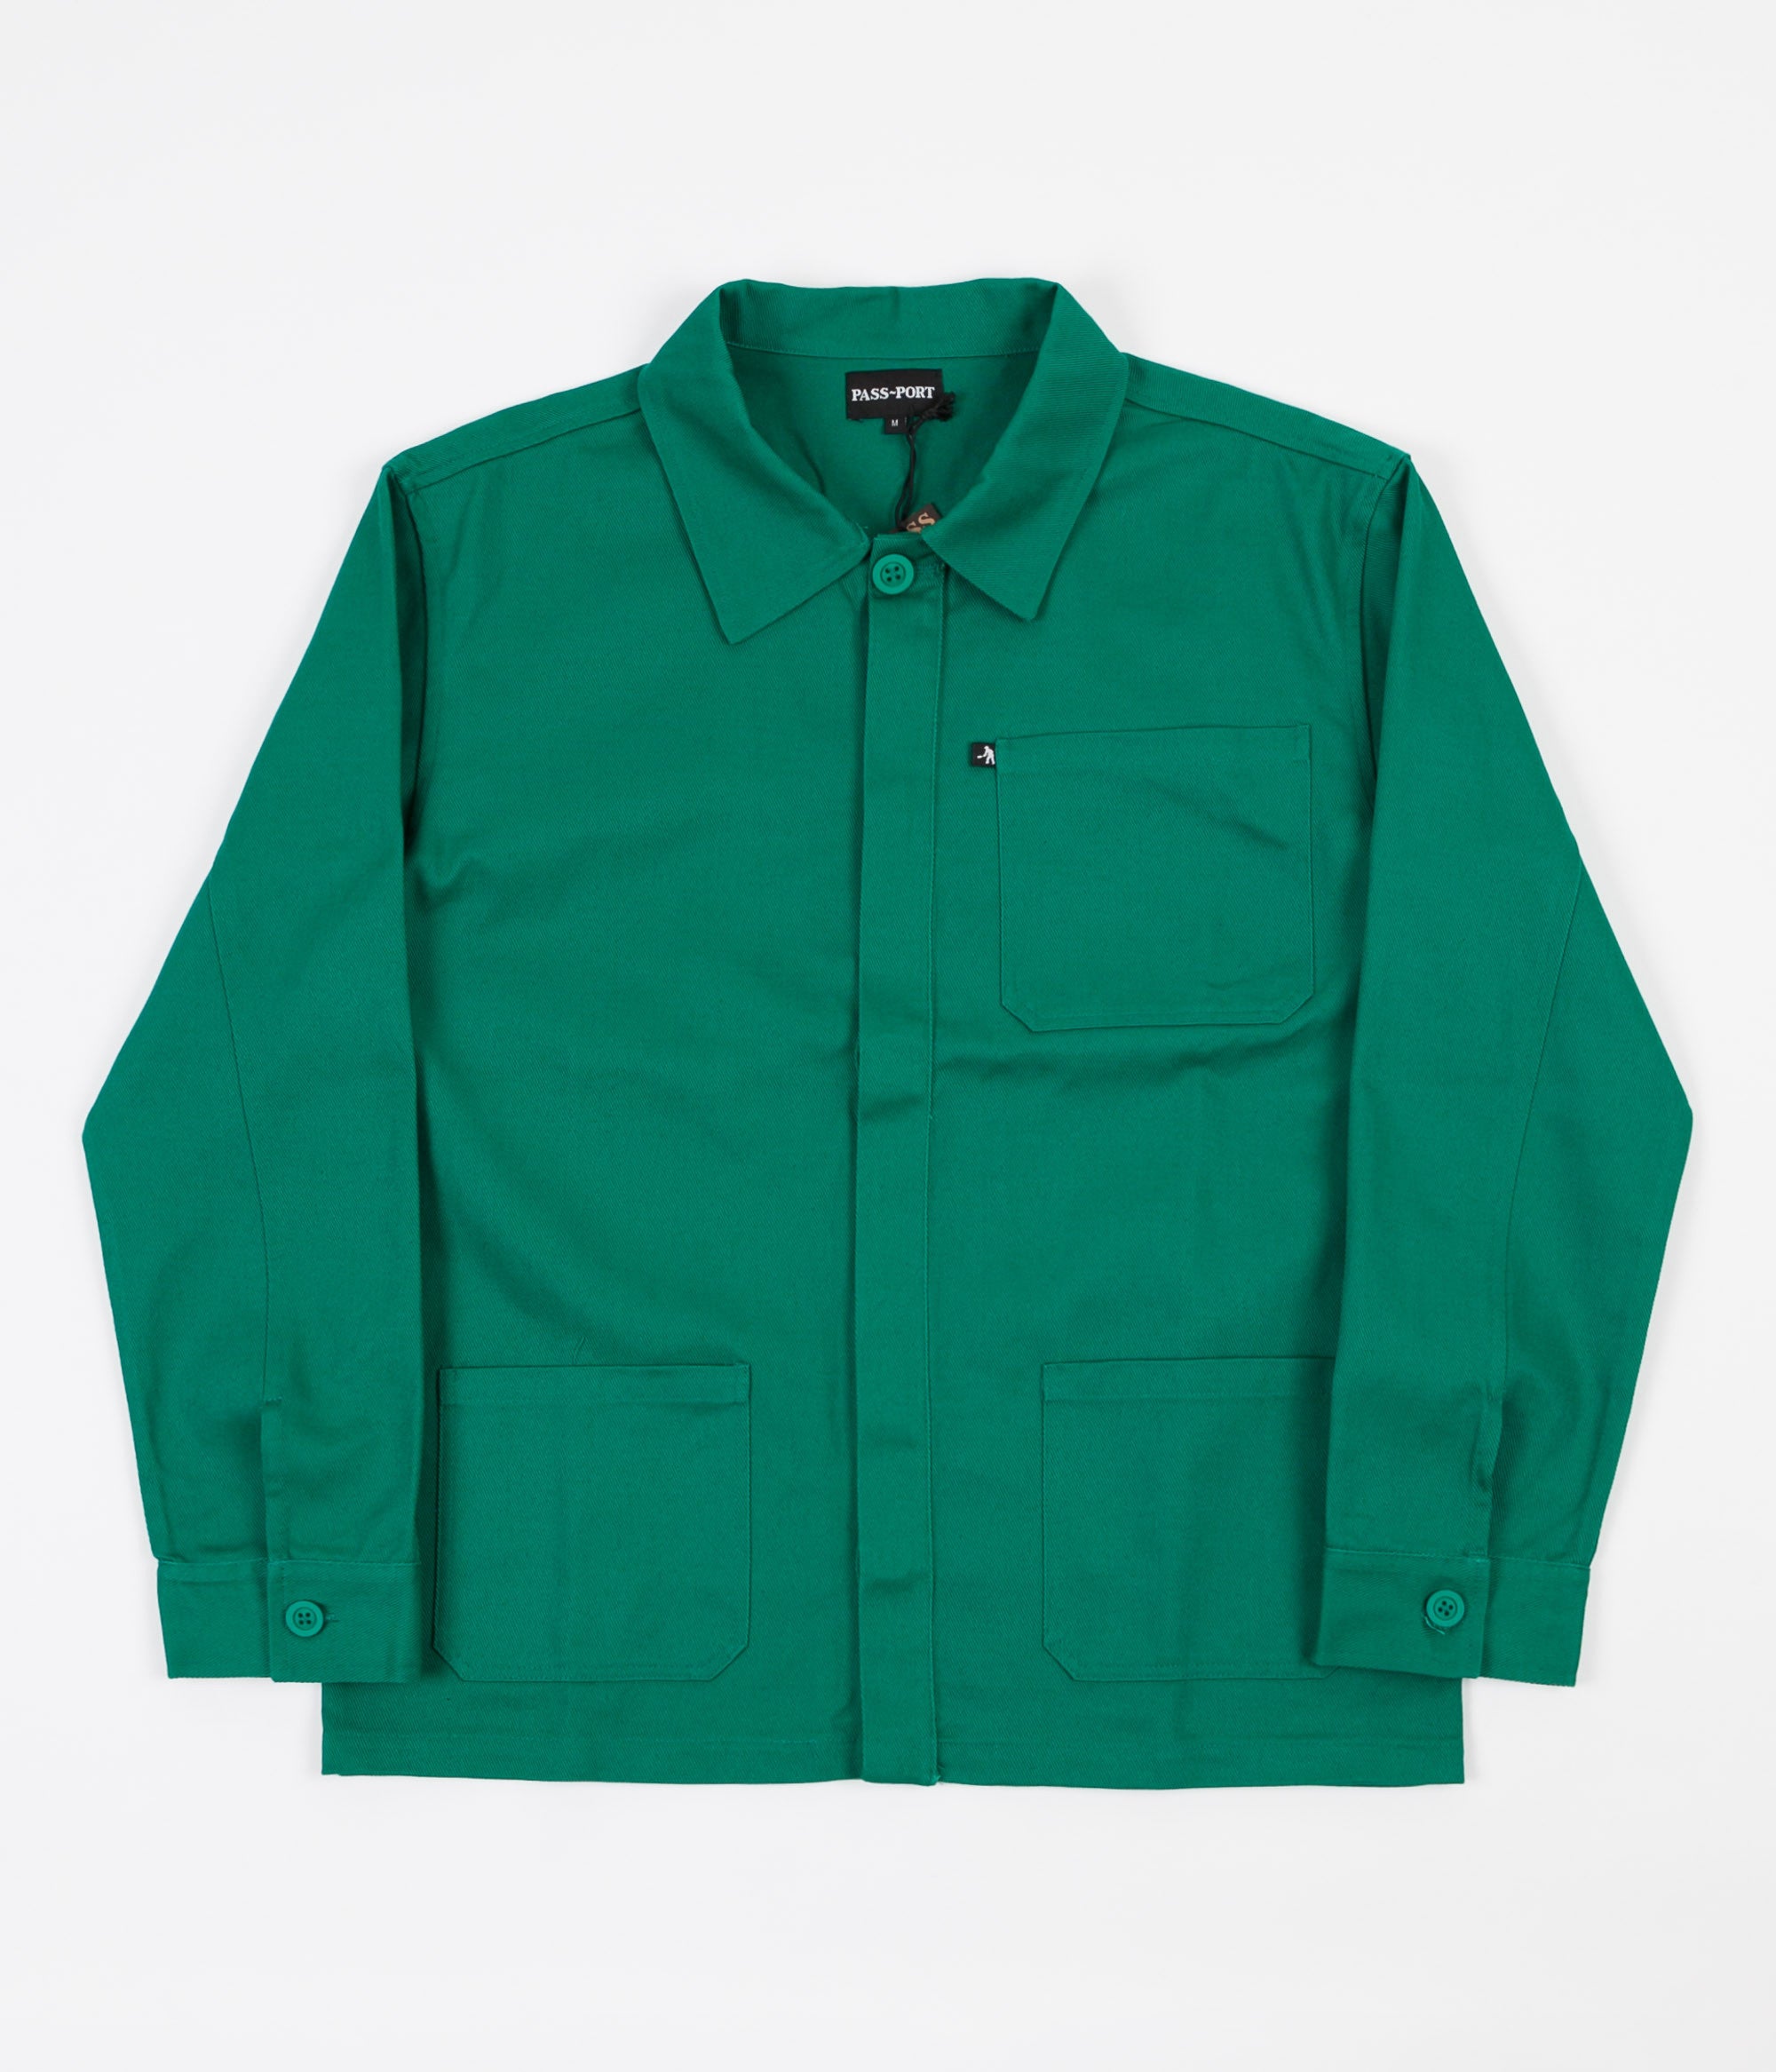 Pass Port Worker's Paint Jacket - Green | Flatspot